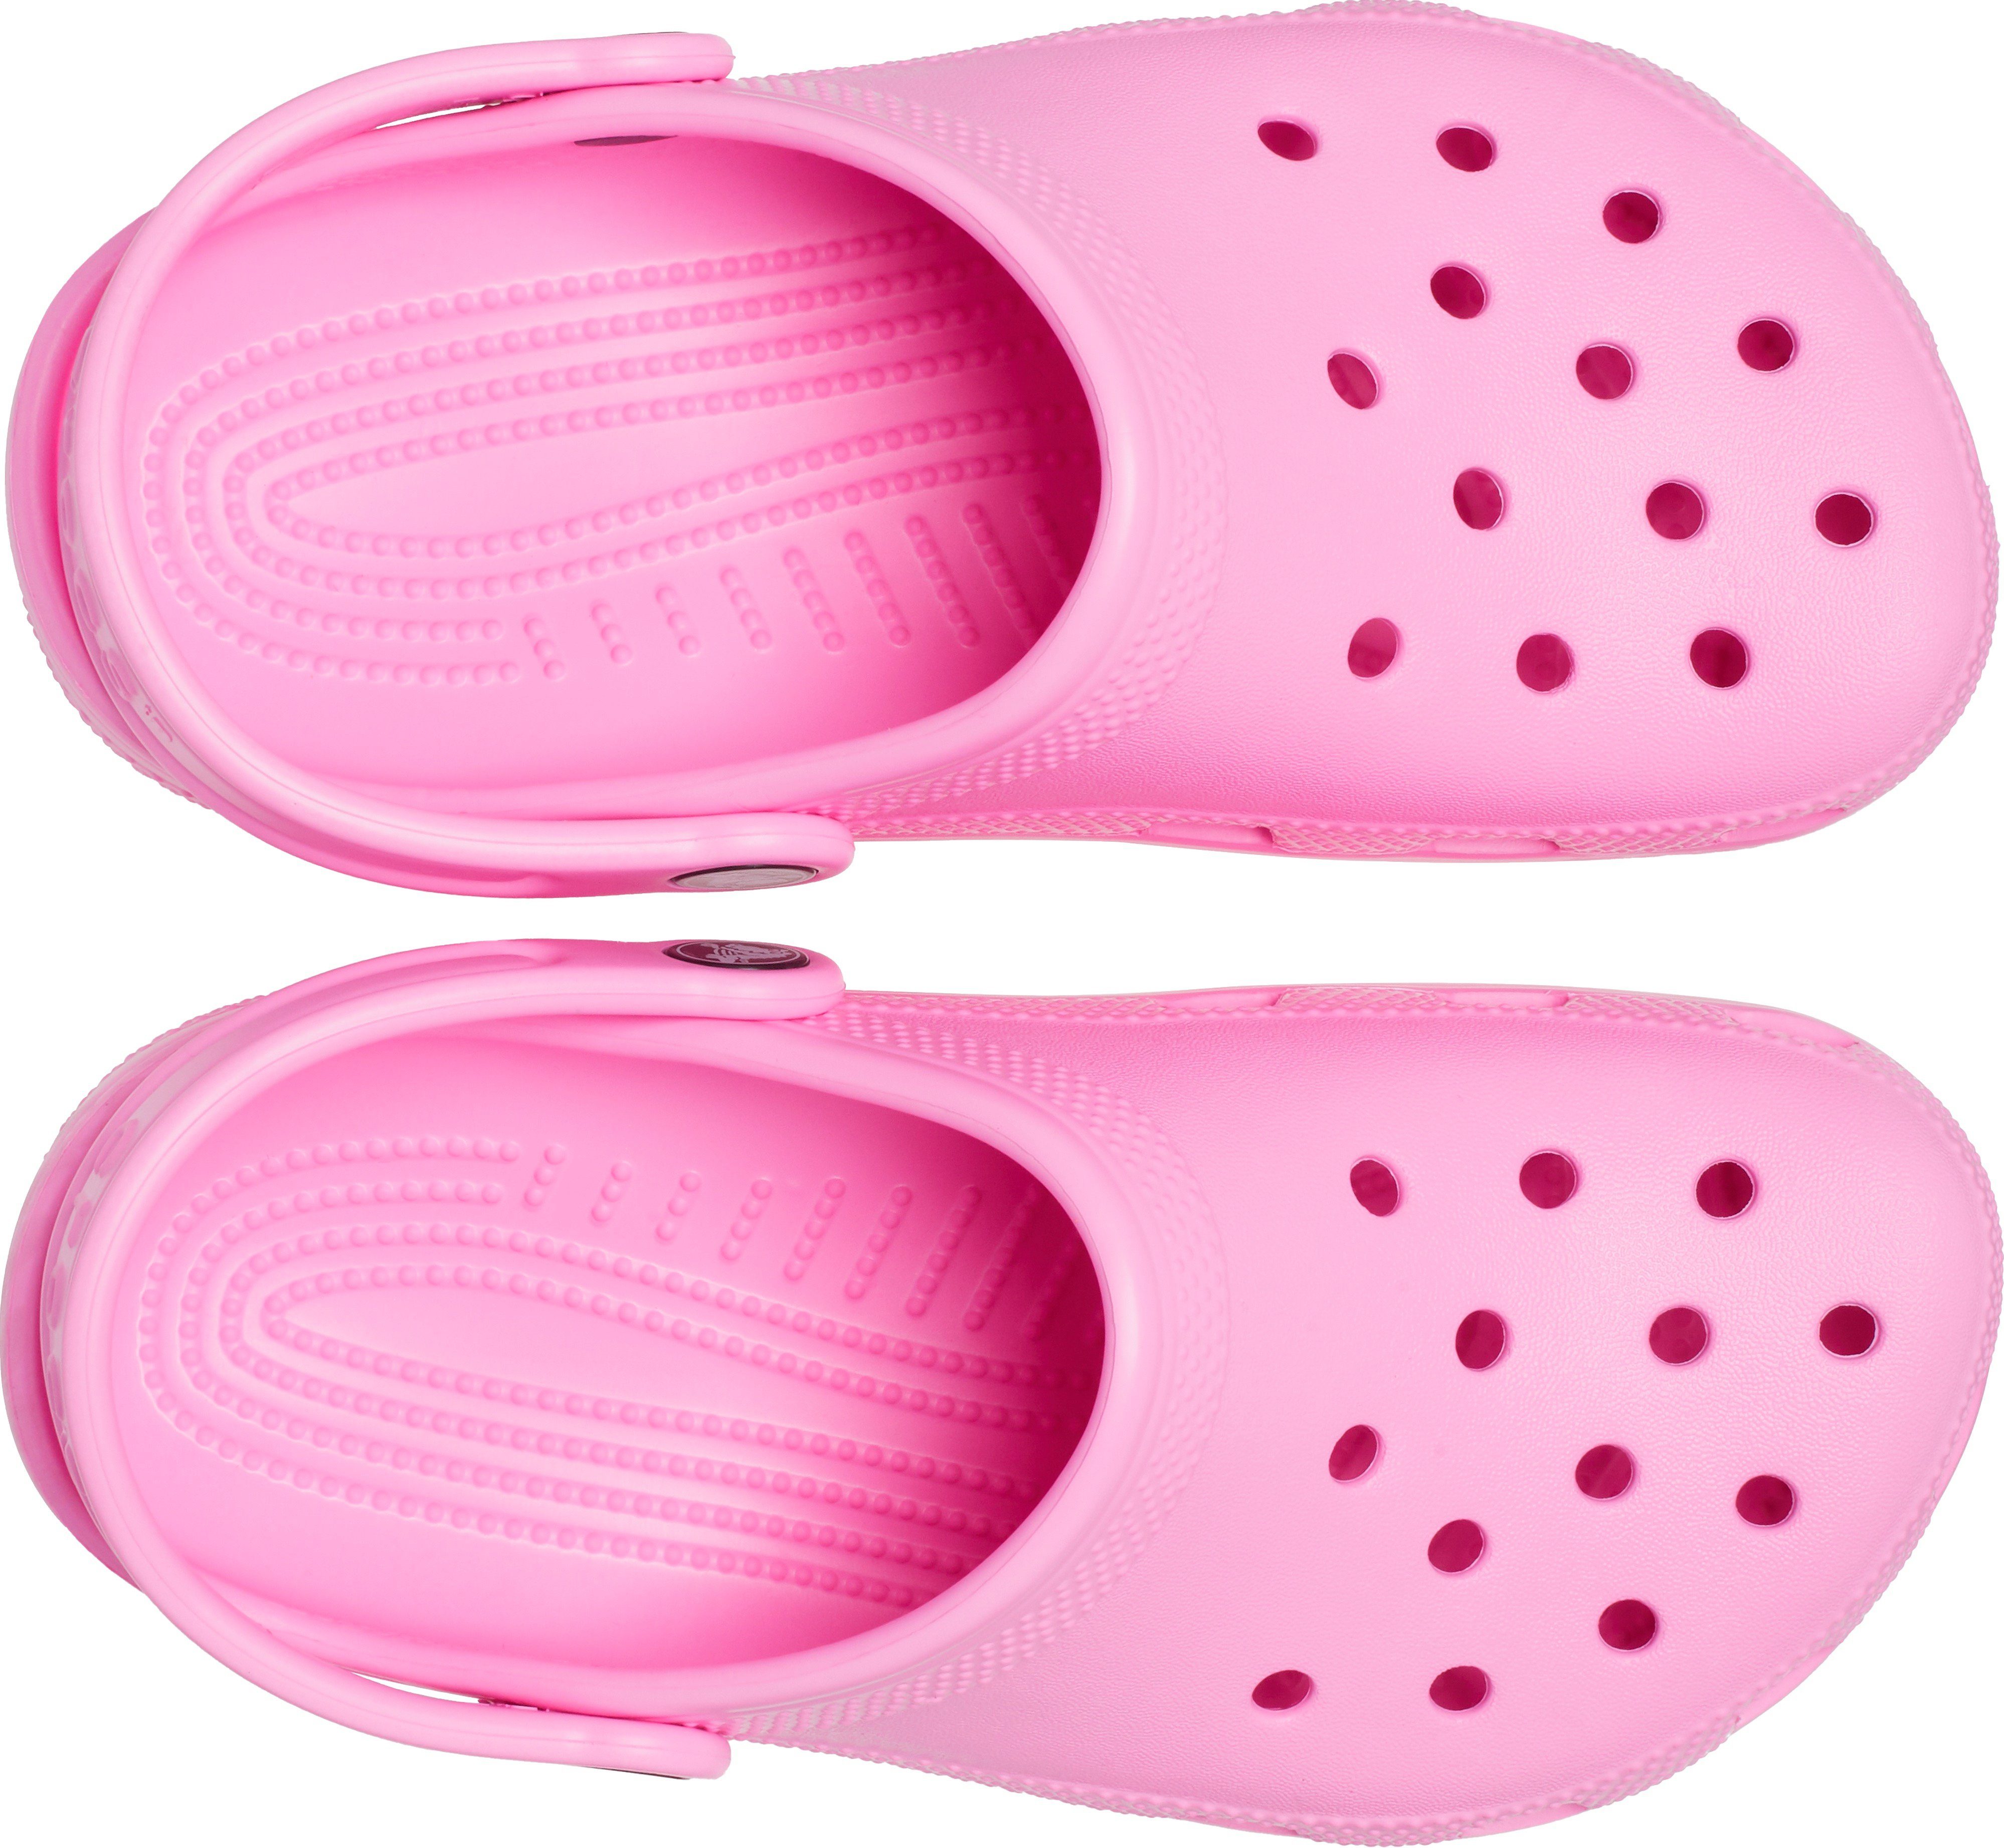 Clog K Clog Classic Crocs pink